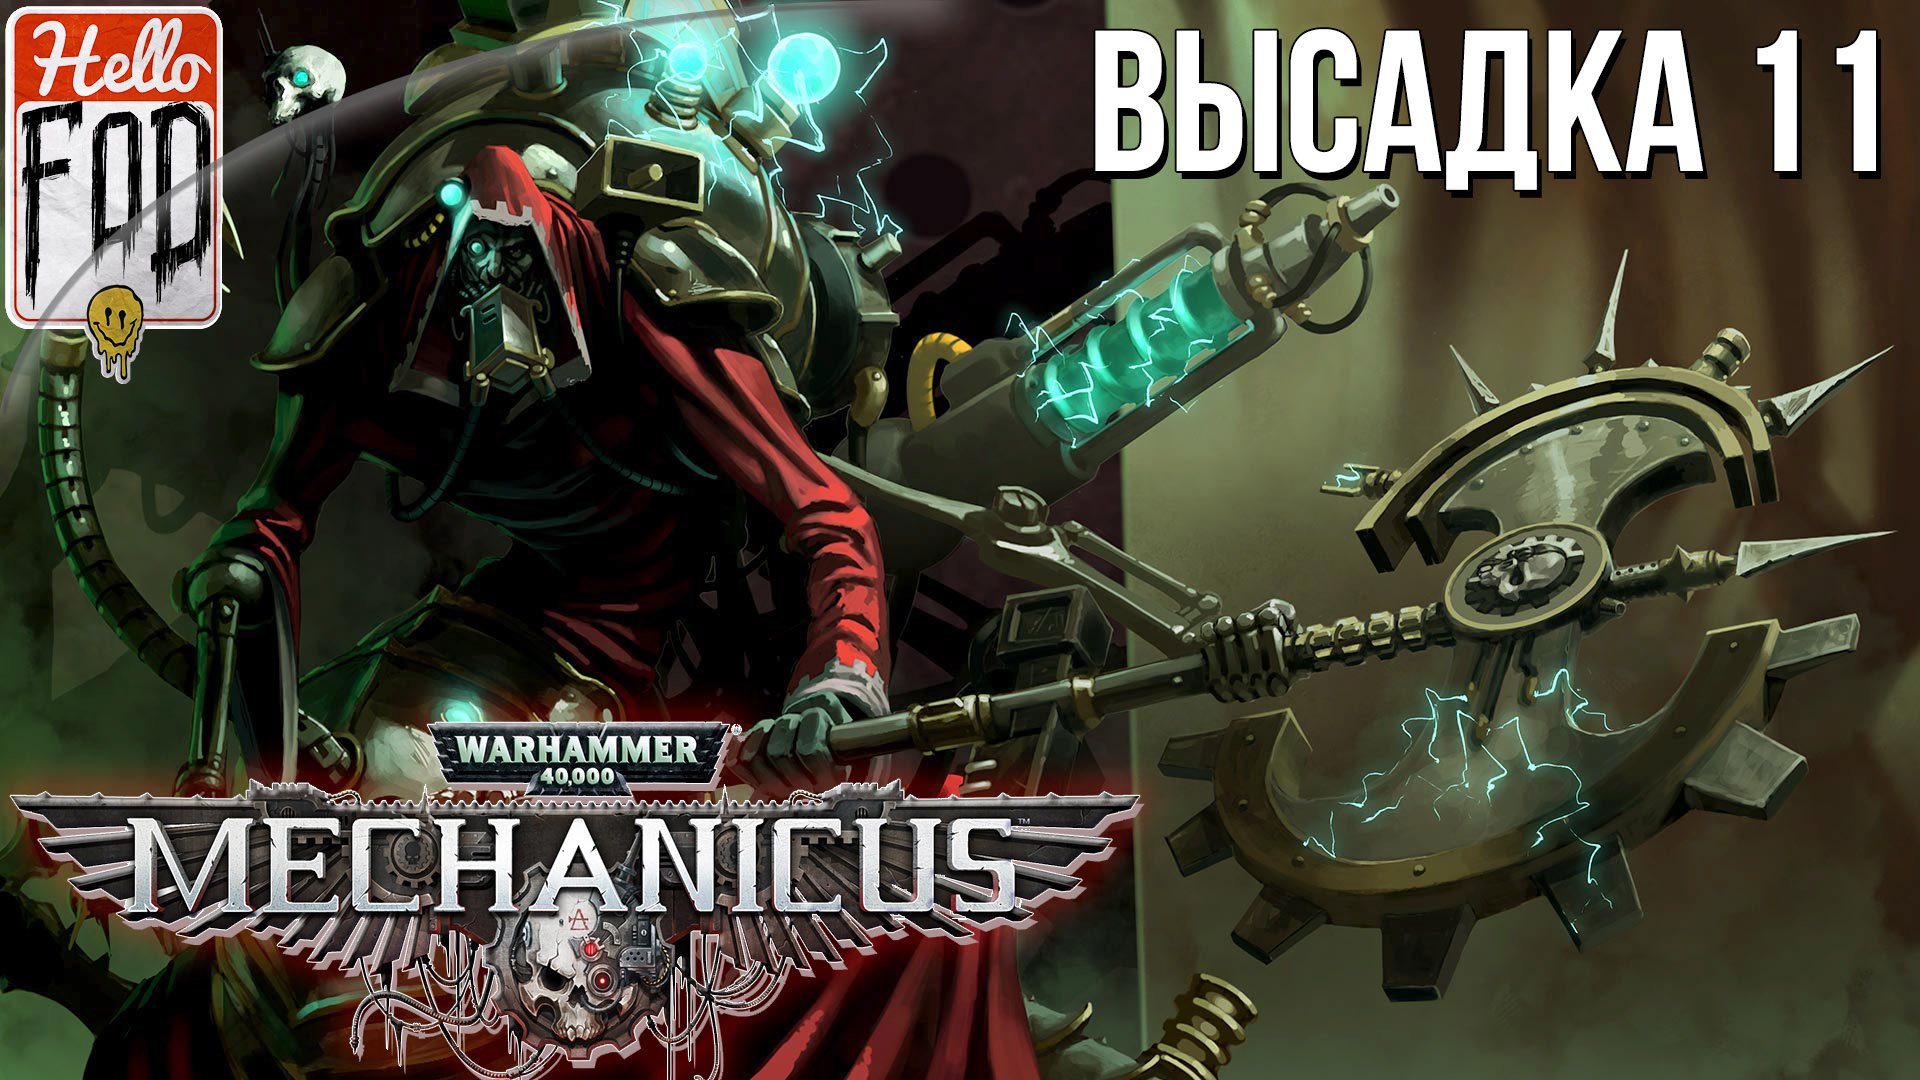 Warhammer 40.000 Mechanicus (Сложность: Очень сложно) ➤ Адмирал пустоты ➤ Высадка 11.